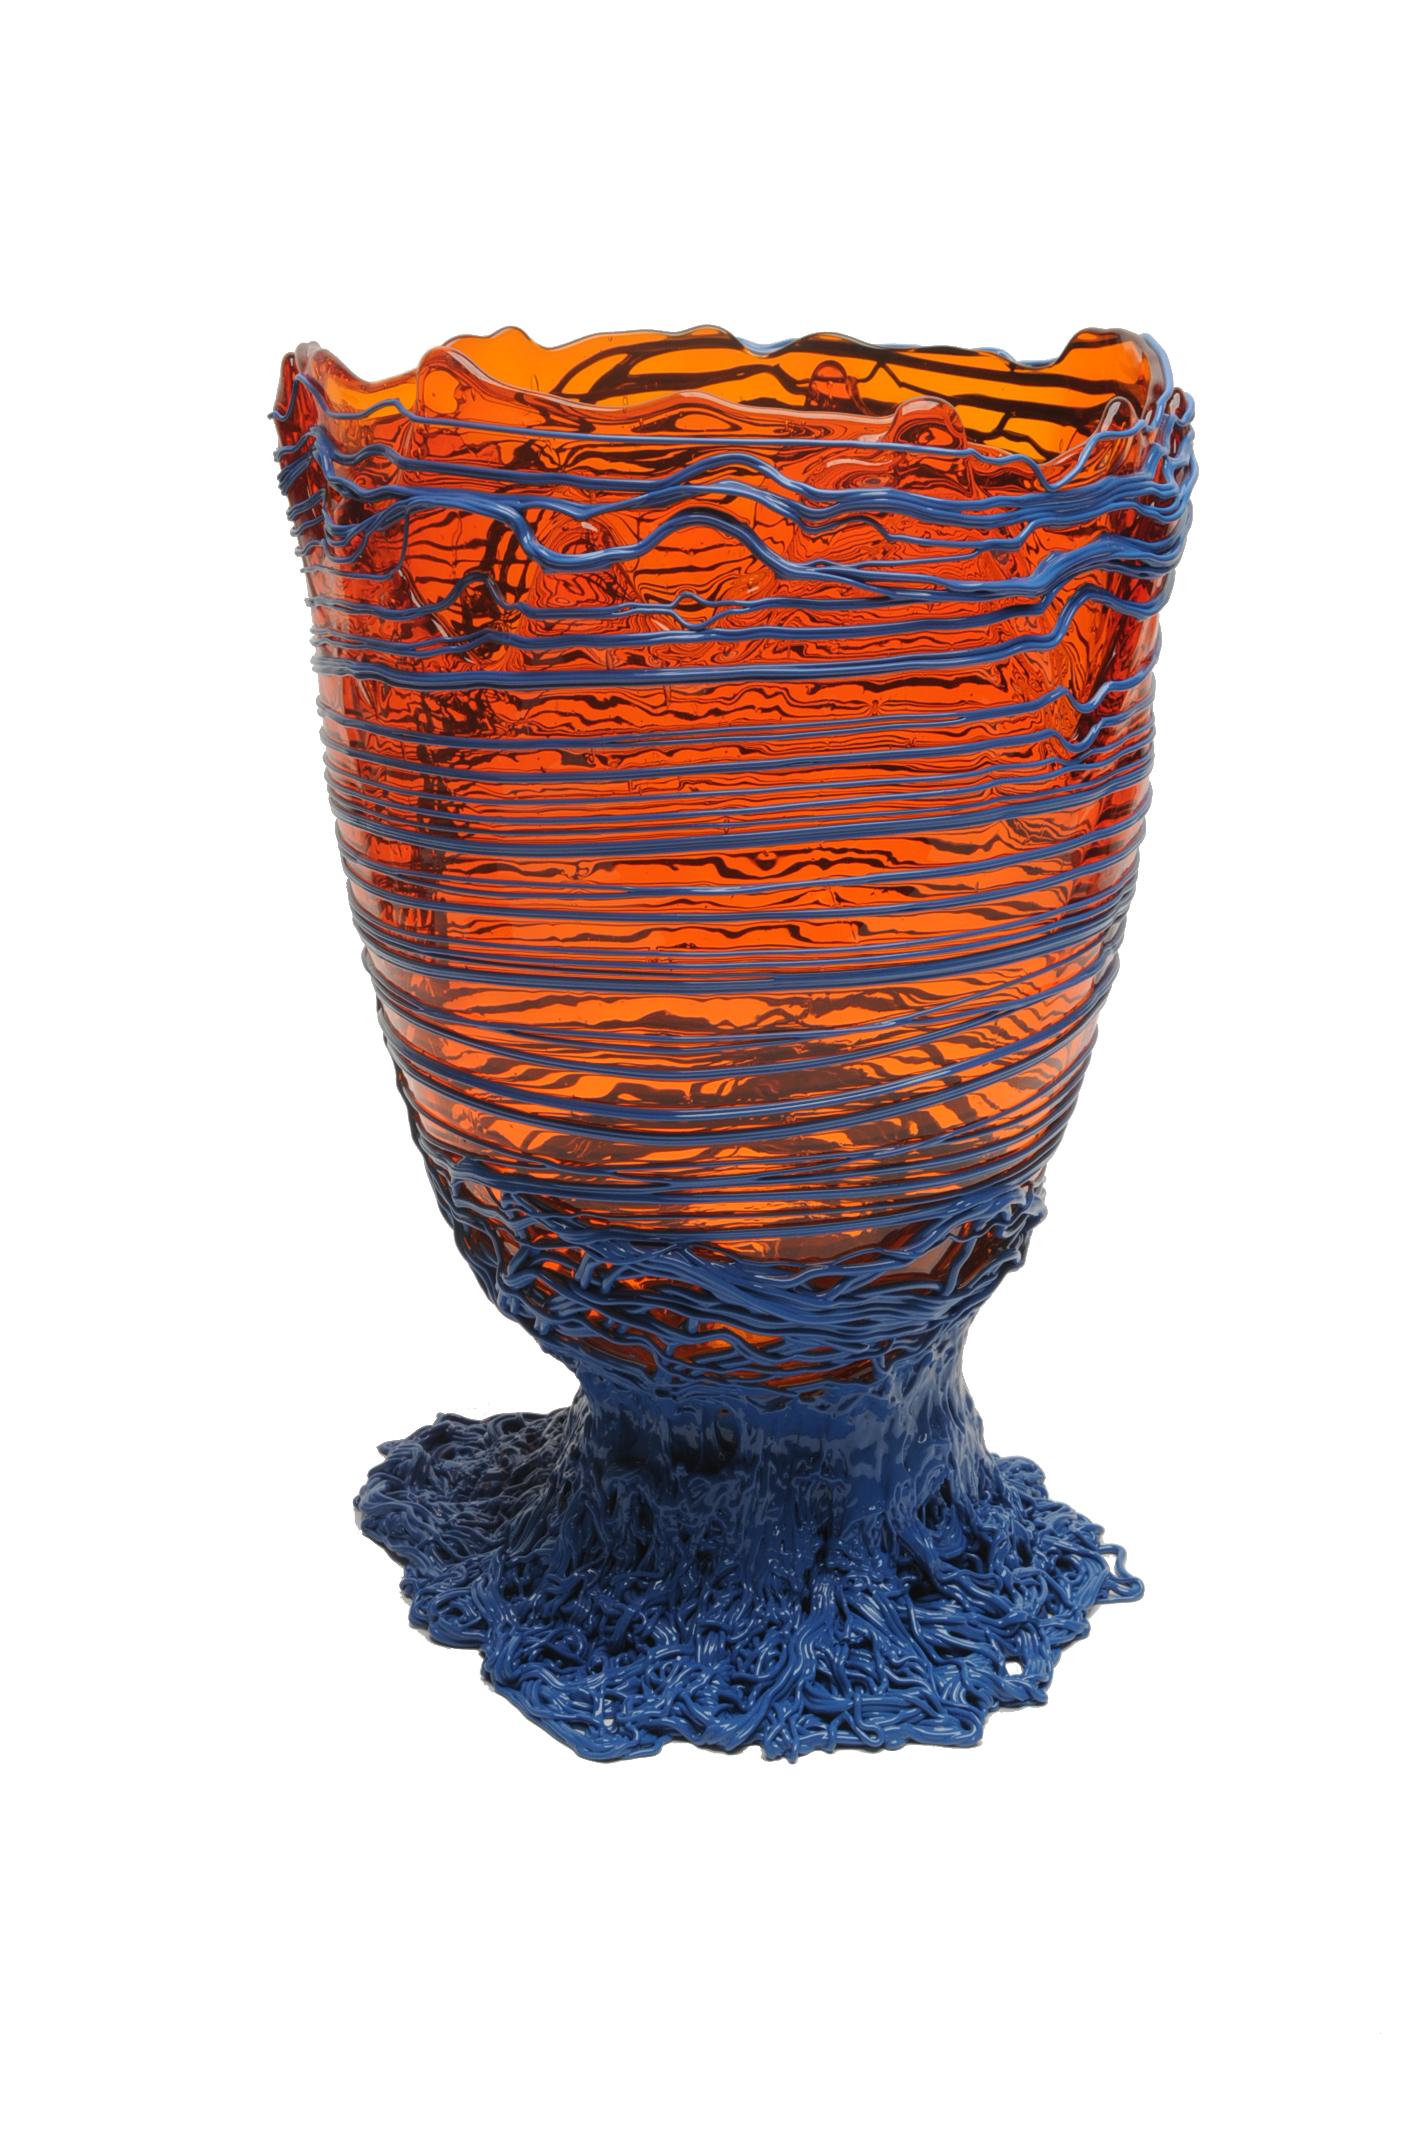 Vase spaghetti, orange clair, lavande foncé mat.

Vase en résine souple conçu par Gaetano Pesce en 1995 pour la collection Fish Design.

Mesures : M - ø 16cm x H 26cm

Autres tailles disponibles.

Couleurs : orange clair, lavande foncé